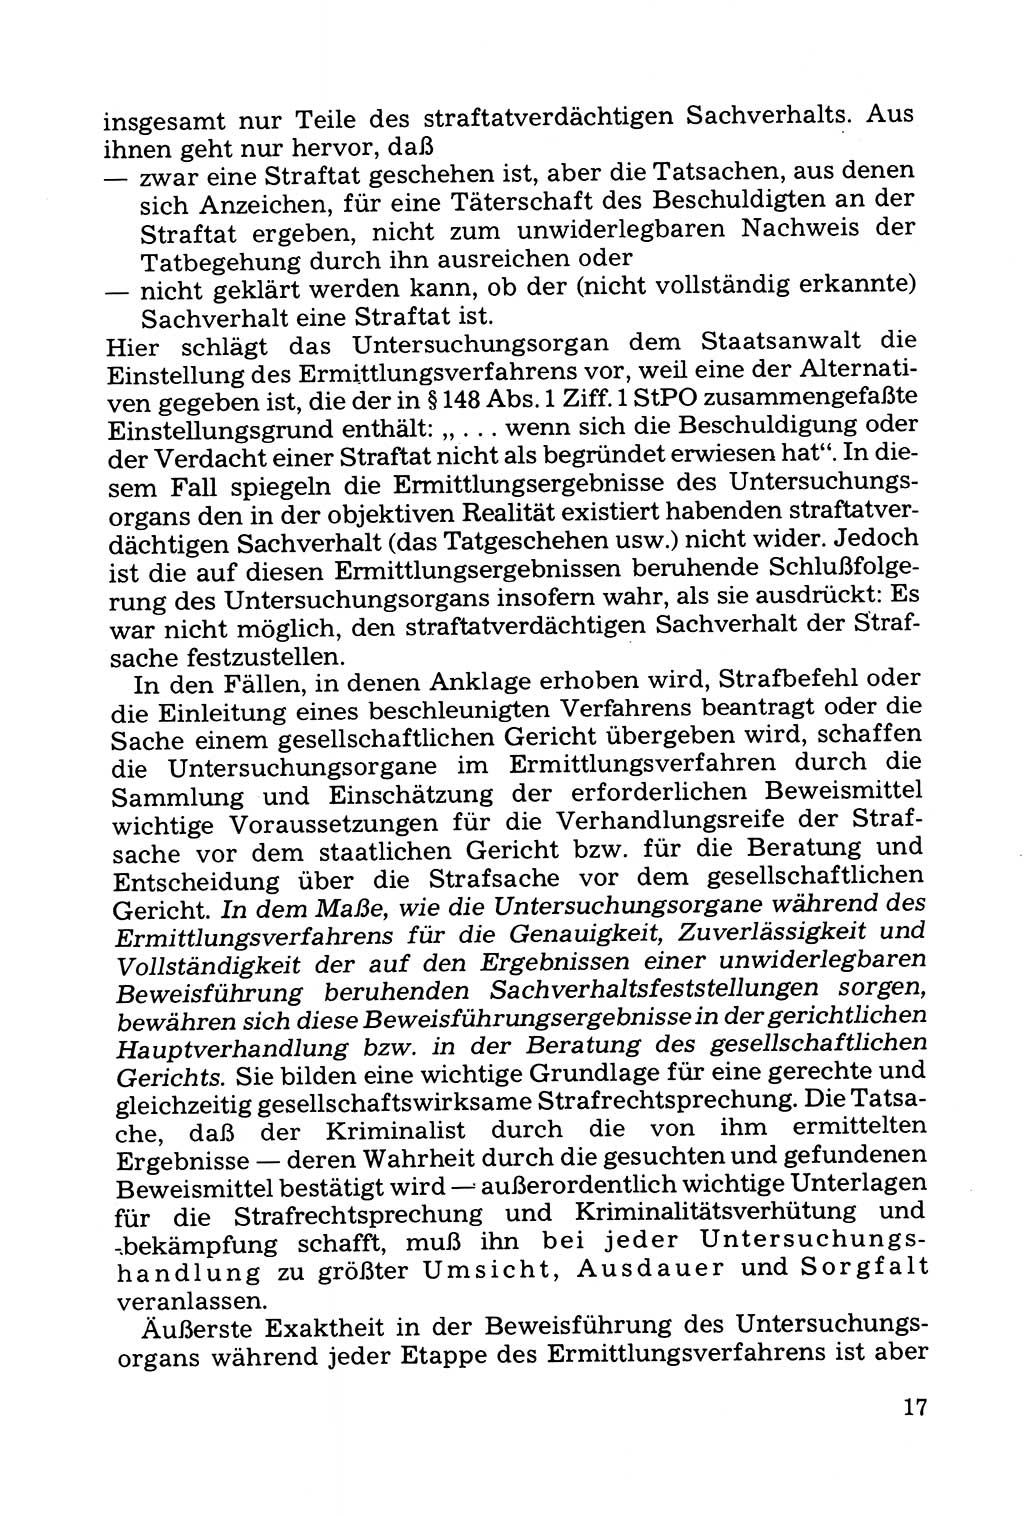 Grundfragen der Beweisführung im Ermittlungsverfahren [Deutsche Demokratische Republik (DDR)] 1980, Seite 17 (Bws.-Fhrg. EV DDR 1980, S. 17)